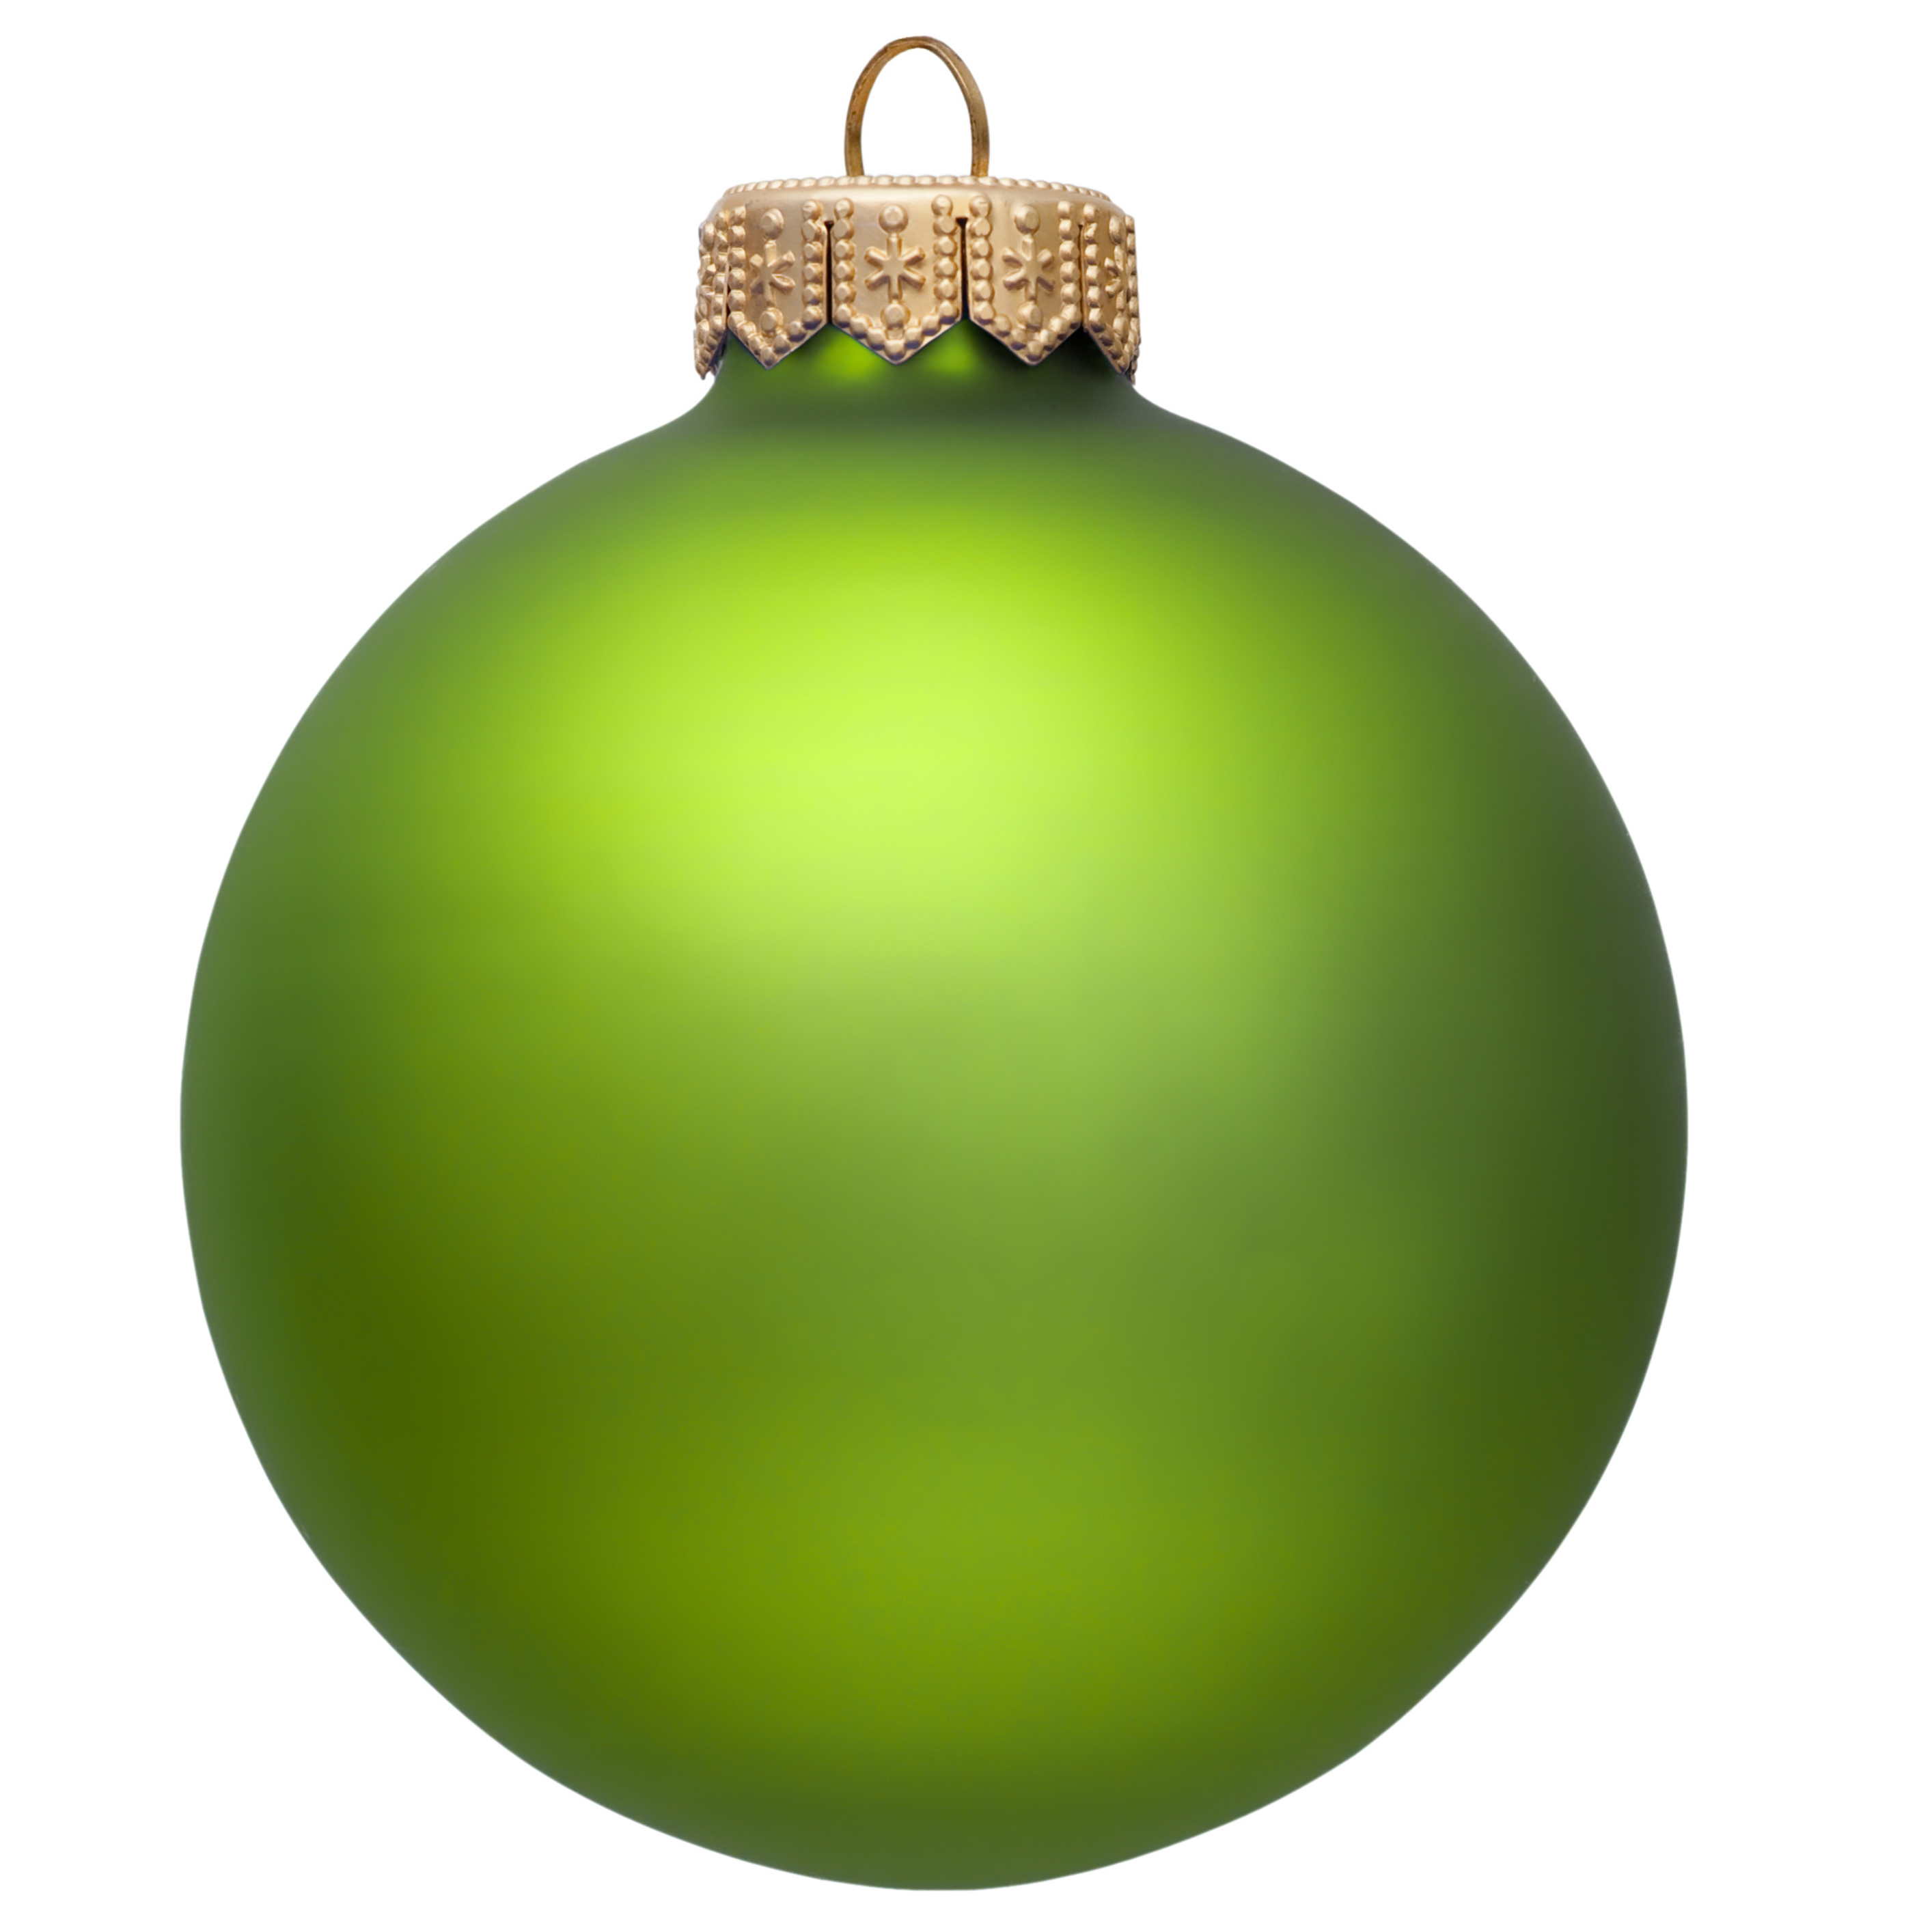 Ornament green clipart.